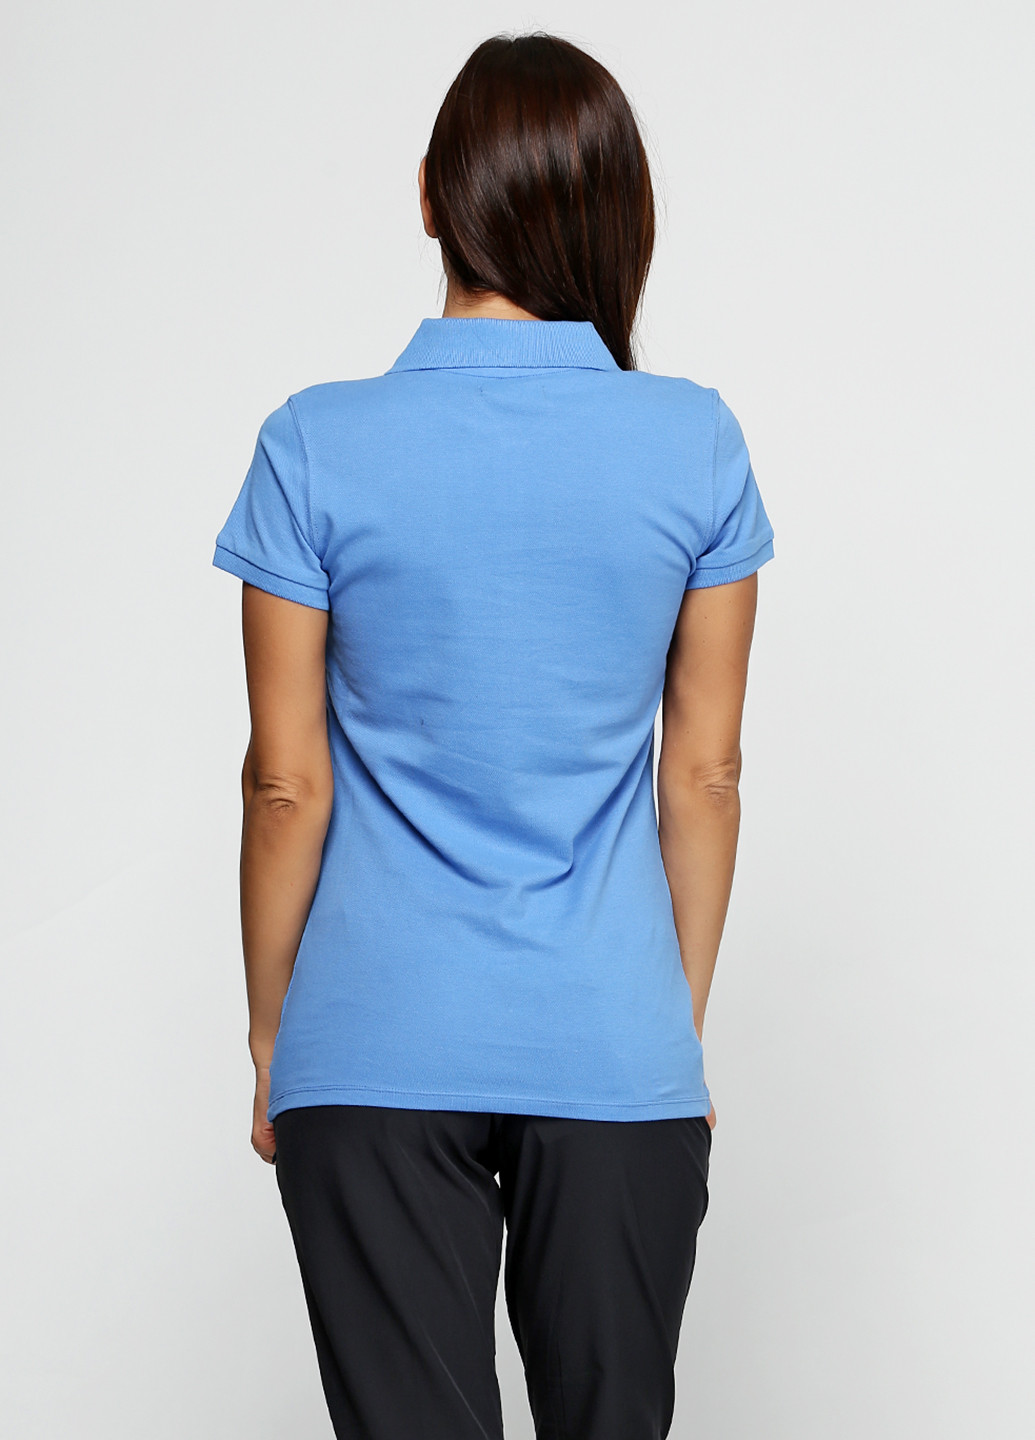 Светло-синяя женская футболка-поло Diadora однотонная